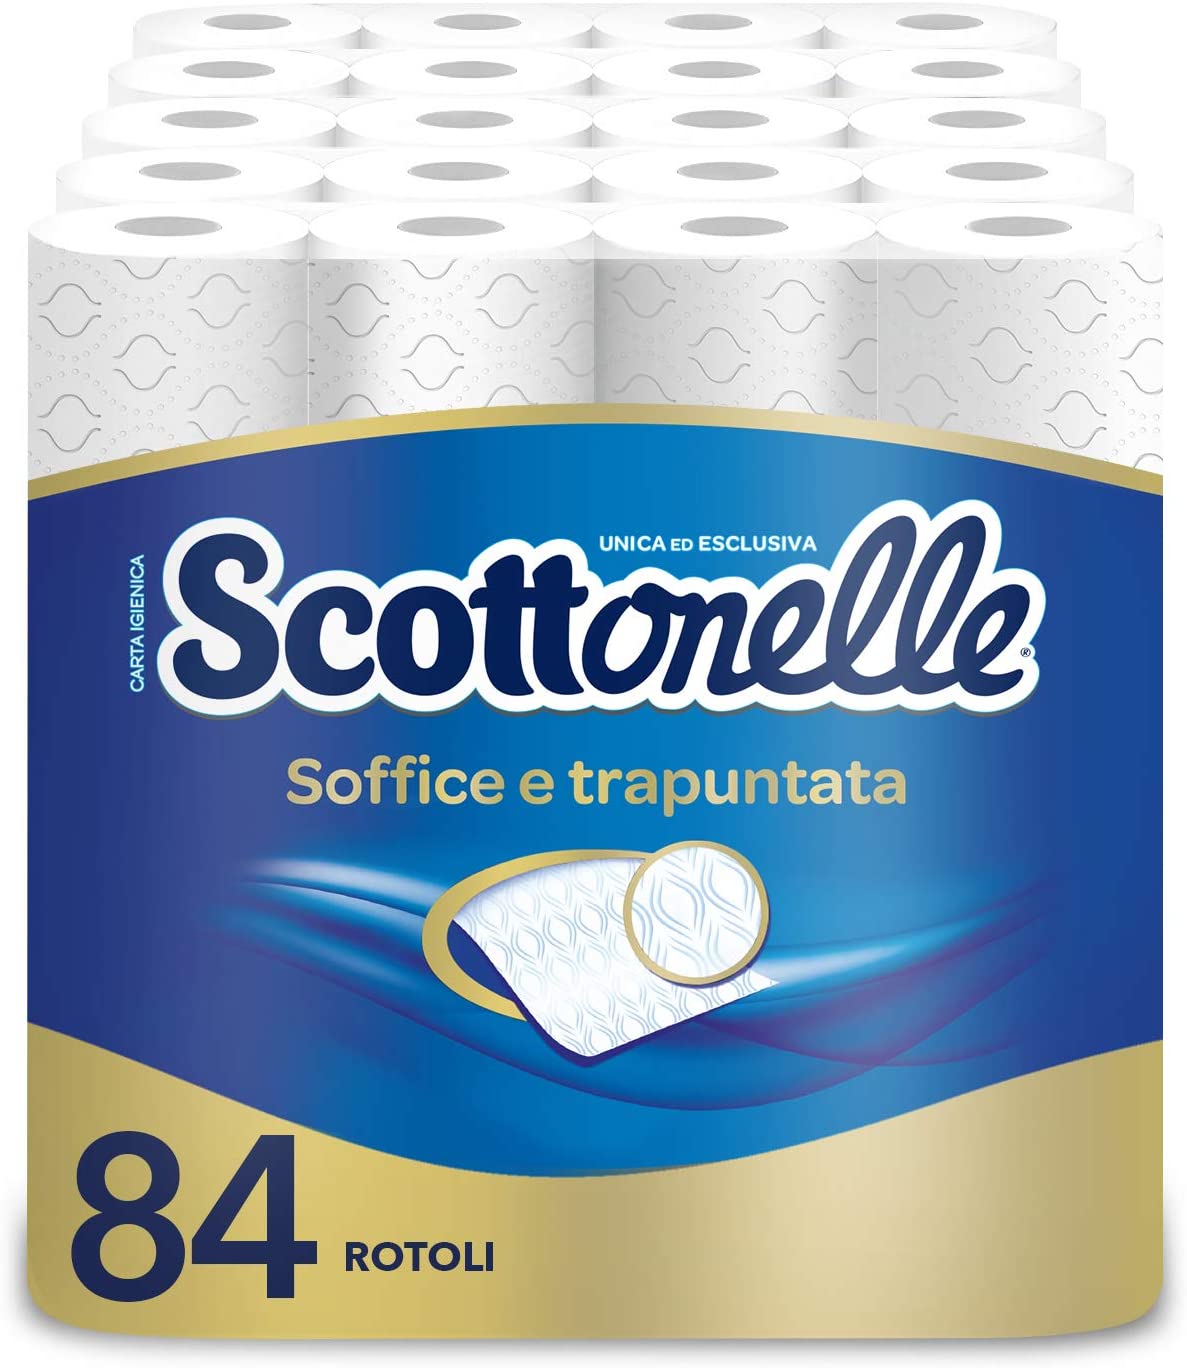 Scottonelle Carta Igienica Soffice e Trapuntata, Confezione da 84 Rotoli